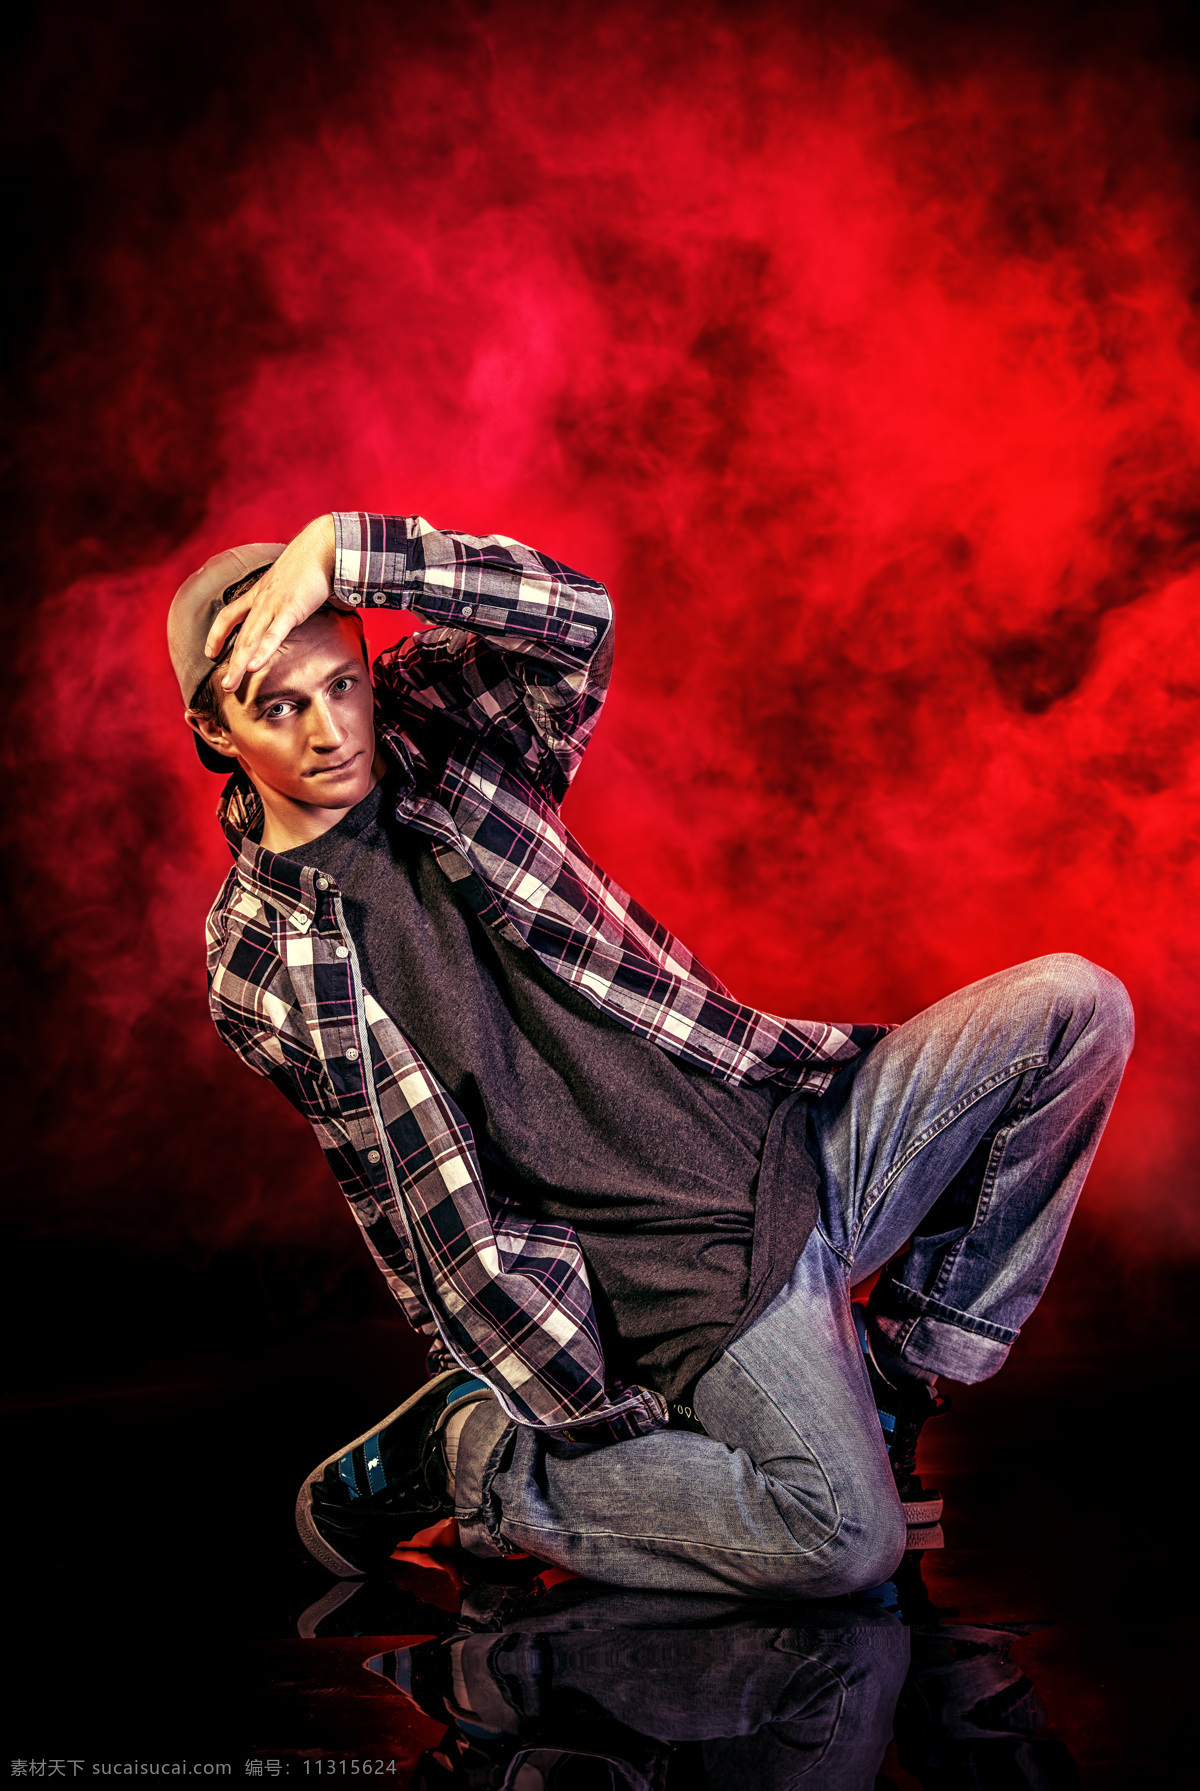 跪 地上 男舞者 红色烟雾背景 街舞 嘻哈 舞蹈 舞者 男人 男孩 演出 表演 其他人物 人物图片